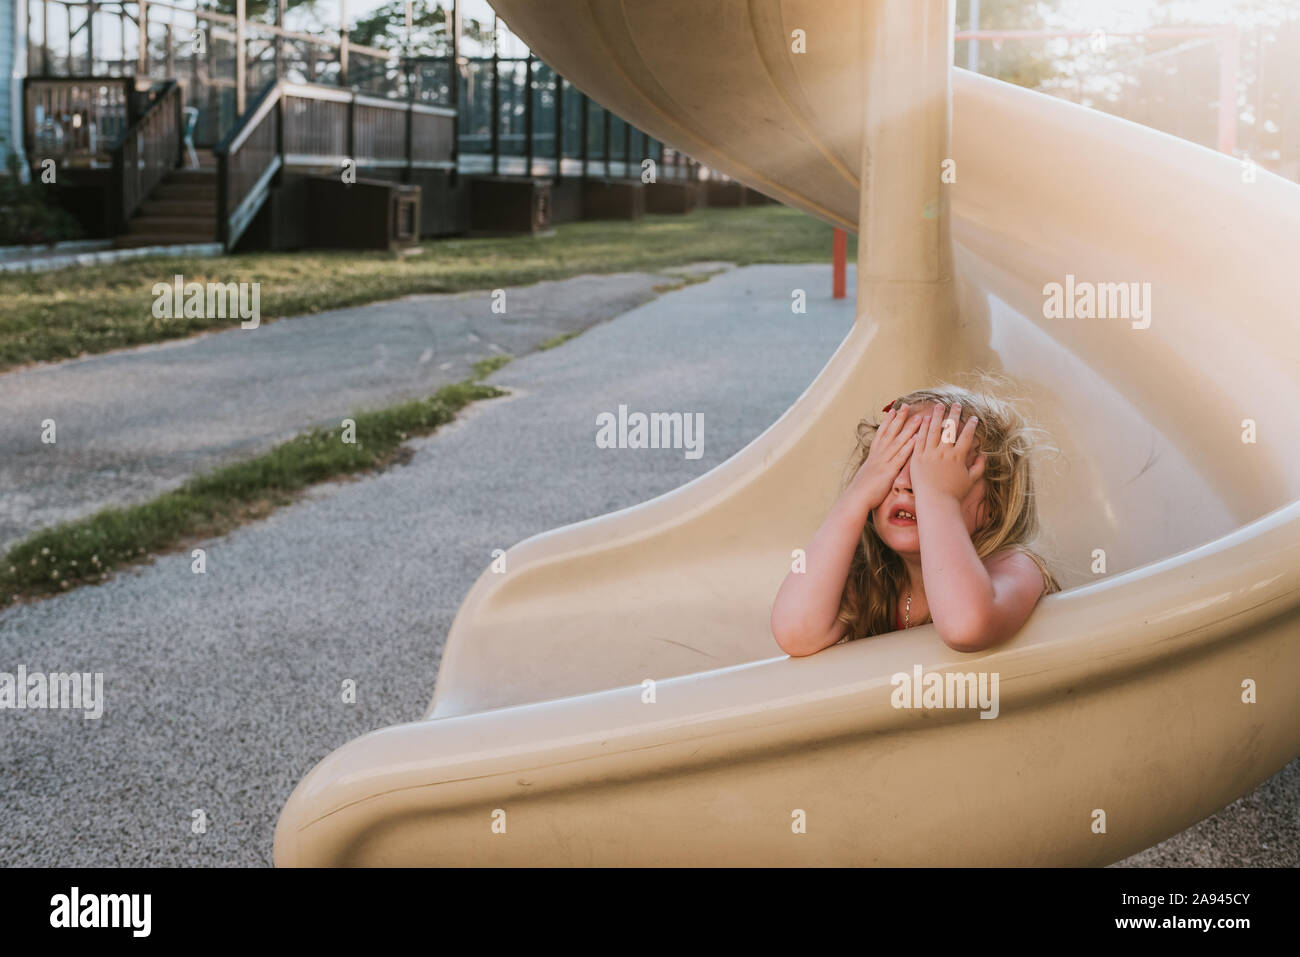 Une petite fille joue à cache-cache sur une diapositive. Banque D'Images